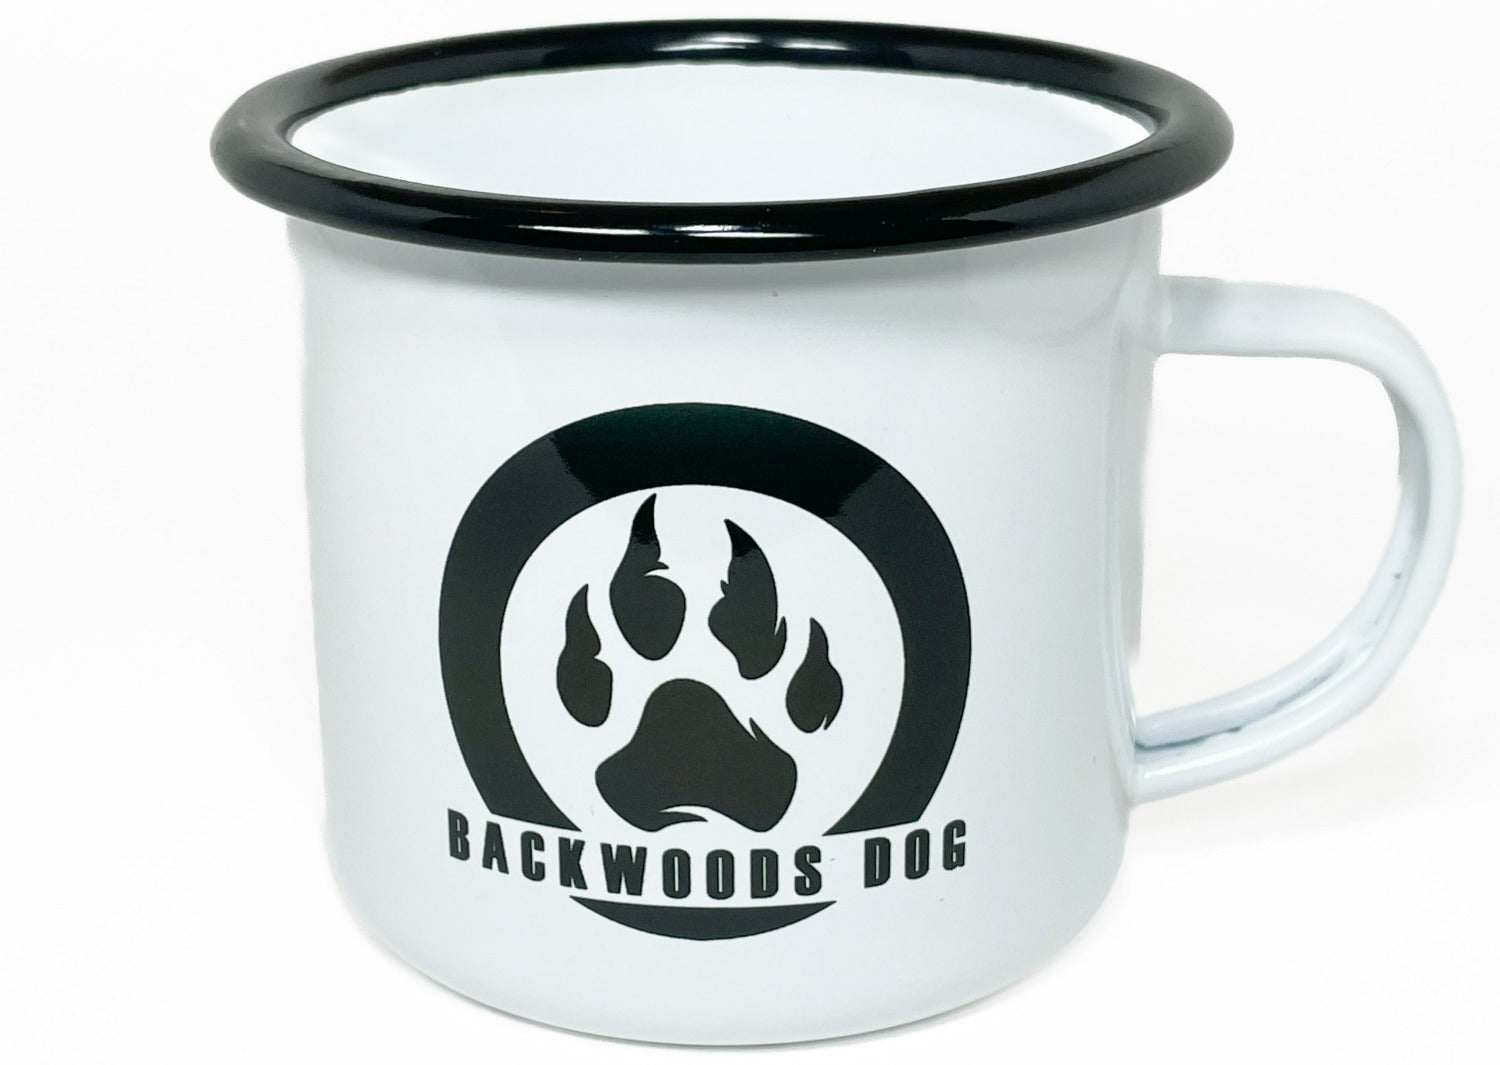 backwoods dog 12oz enamel mug